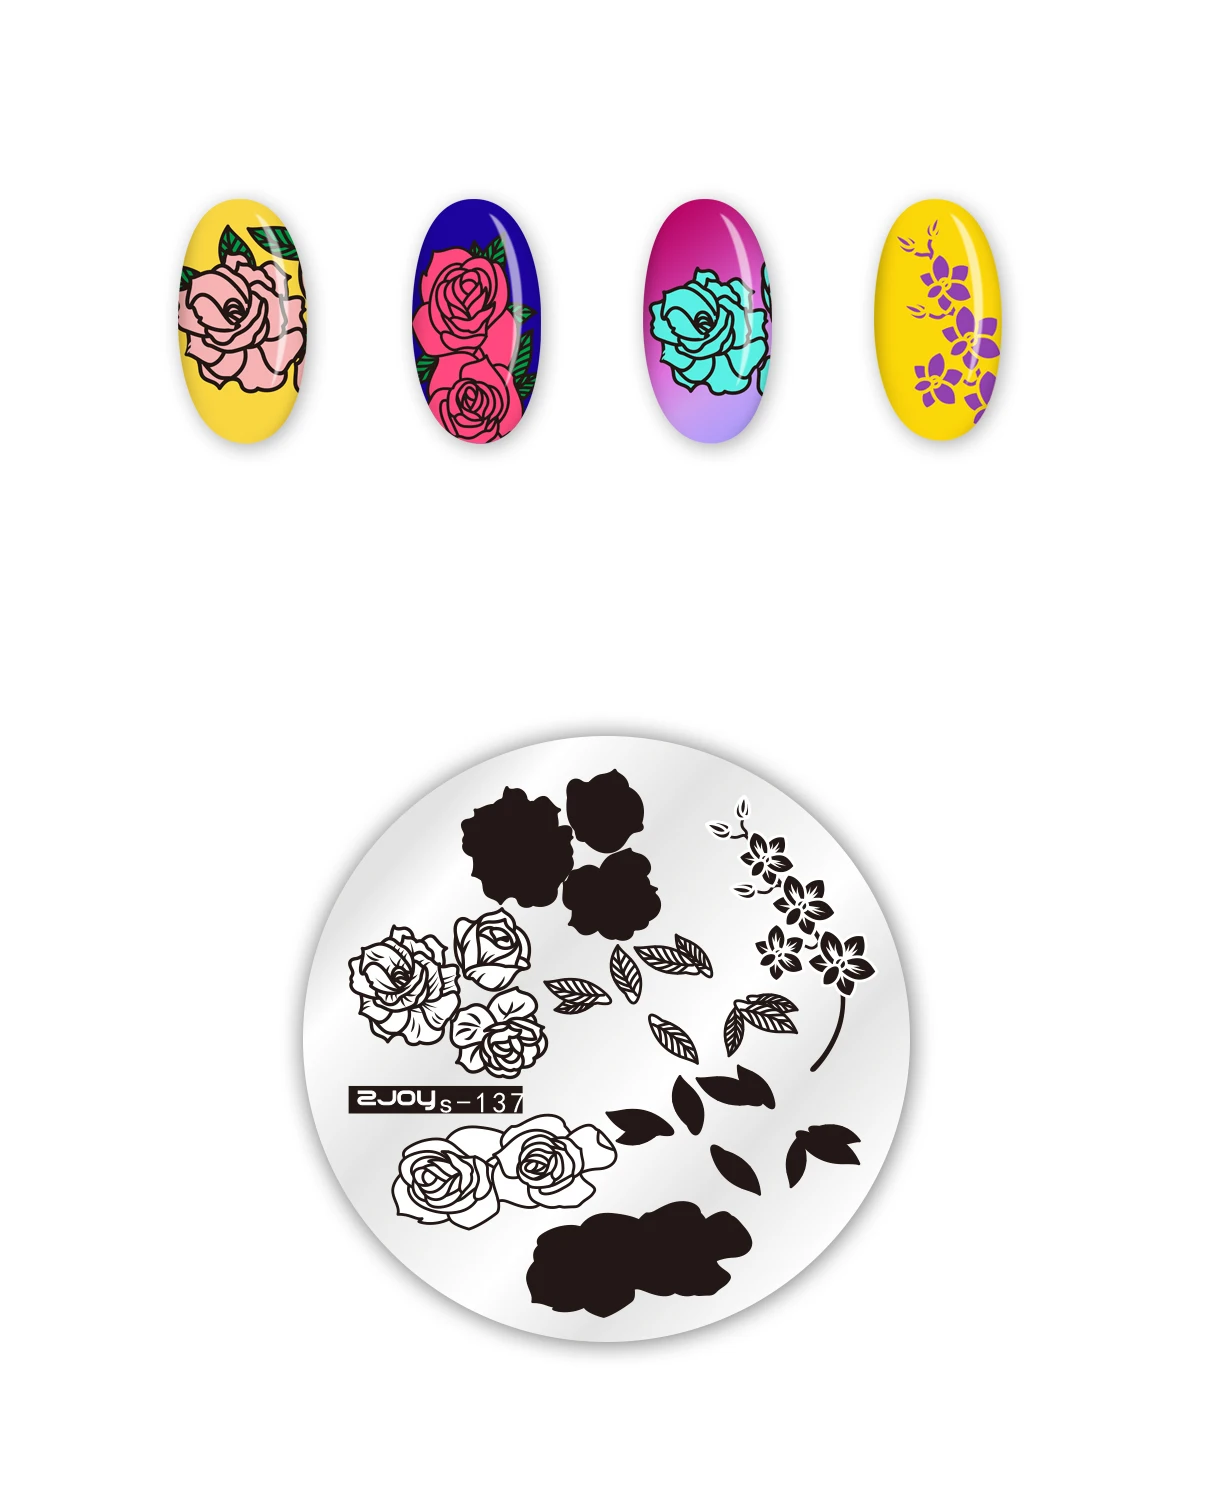 Стемпинг год Круглые штамповки для ногтей пластины цветок Геометрическая обезьяна дизайн ногтей трафареты для дизайна ногтей штамп шаблон